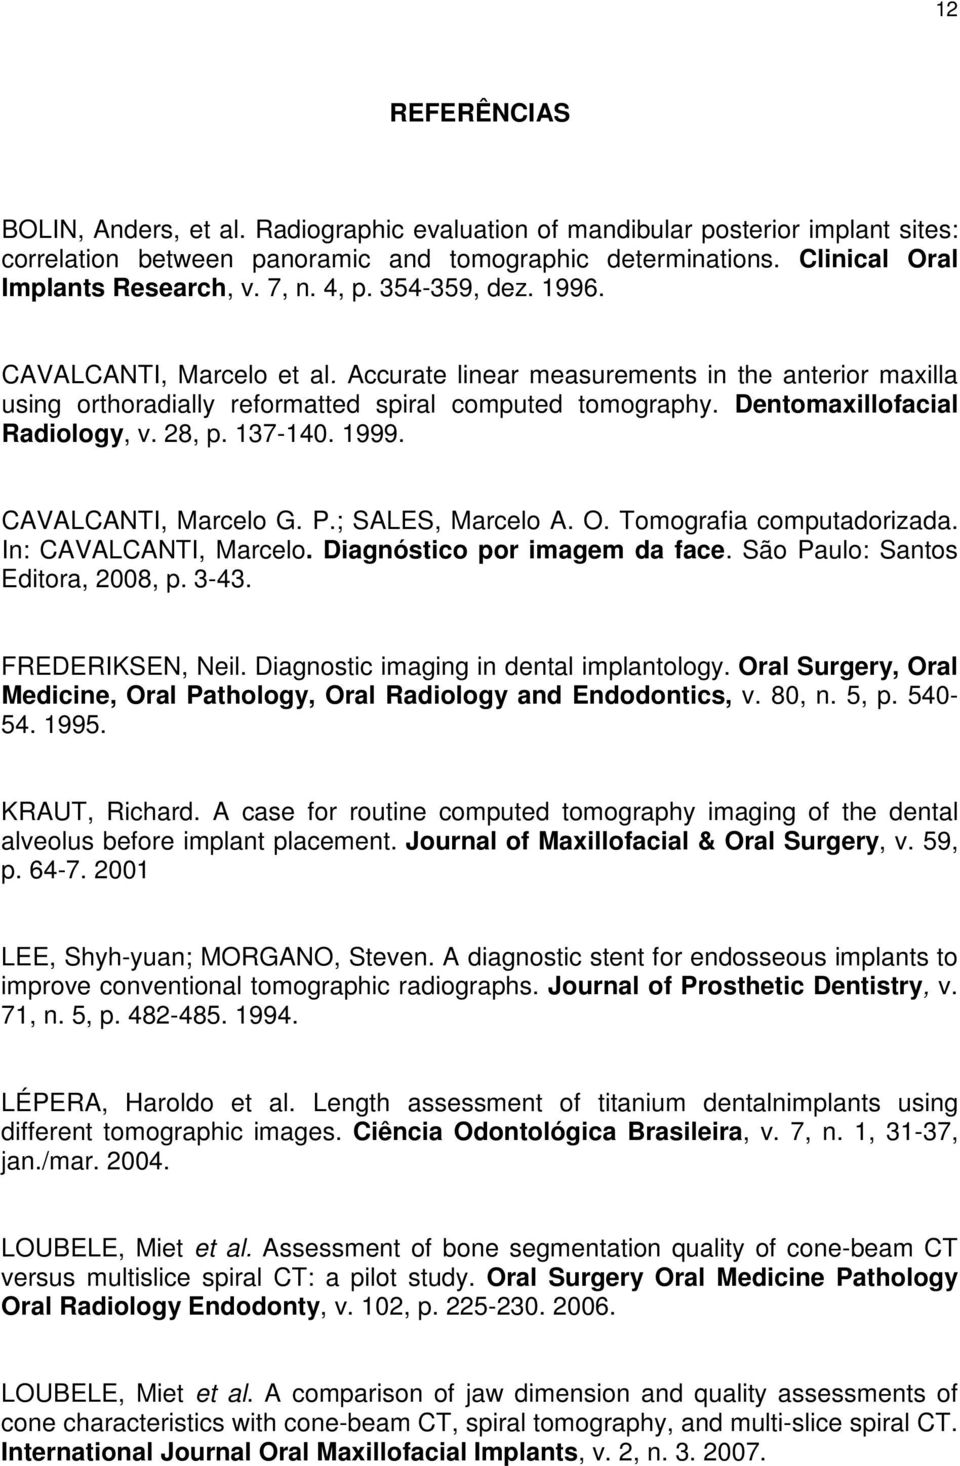 Dentomaxillofacial Radiology, v. 28, p. 137-140. 1999. CAVALCANTI, Marcelo G. P.; SALES, Marcelo A. O. Tomografia computadorizada. In: CAVALCANTI, Marcelo. Diagnóstico por imagem da face.